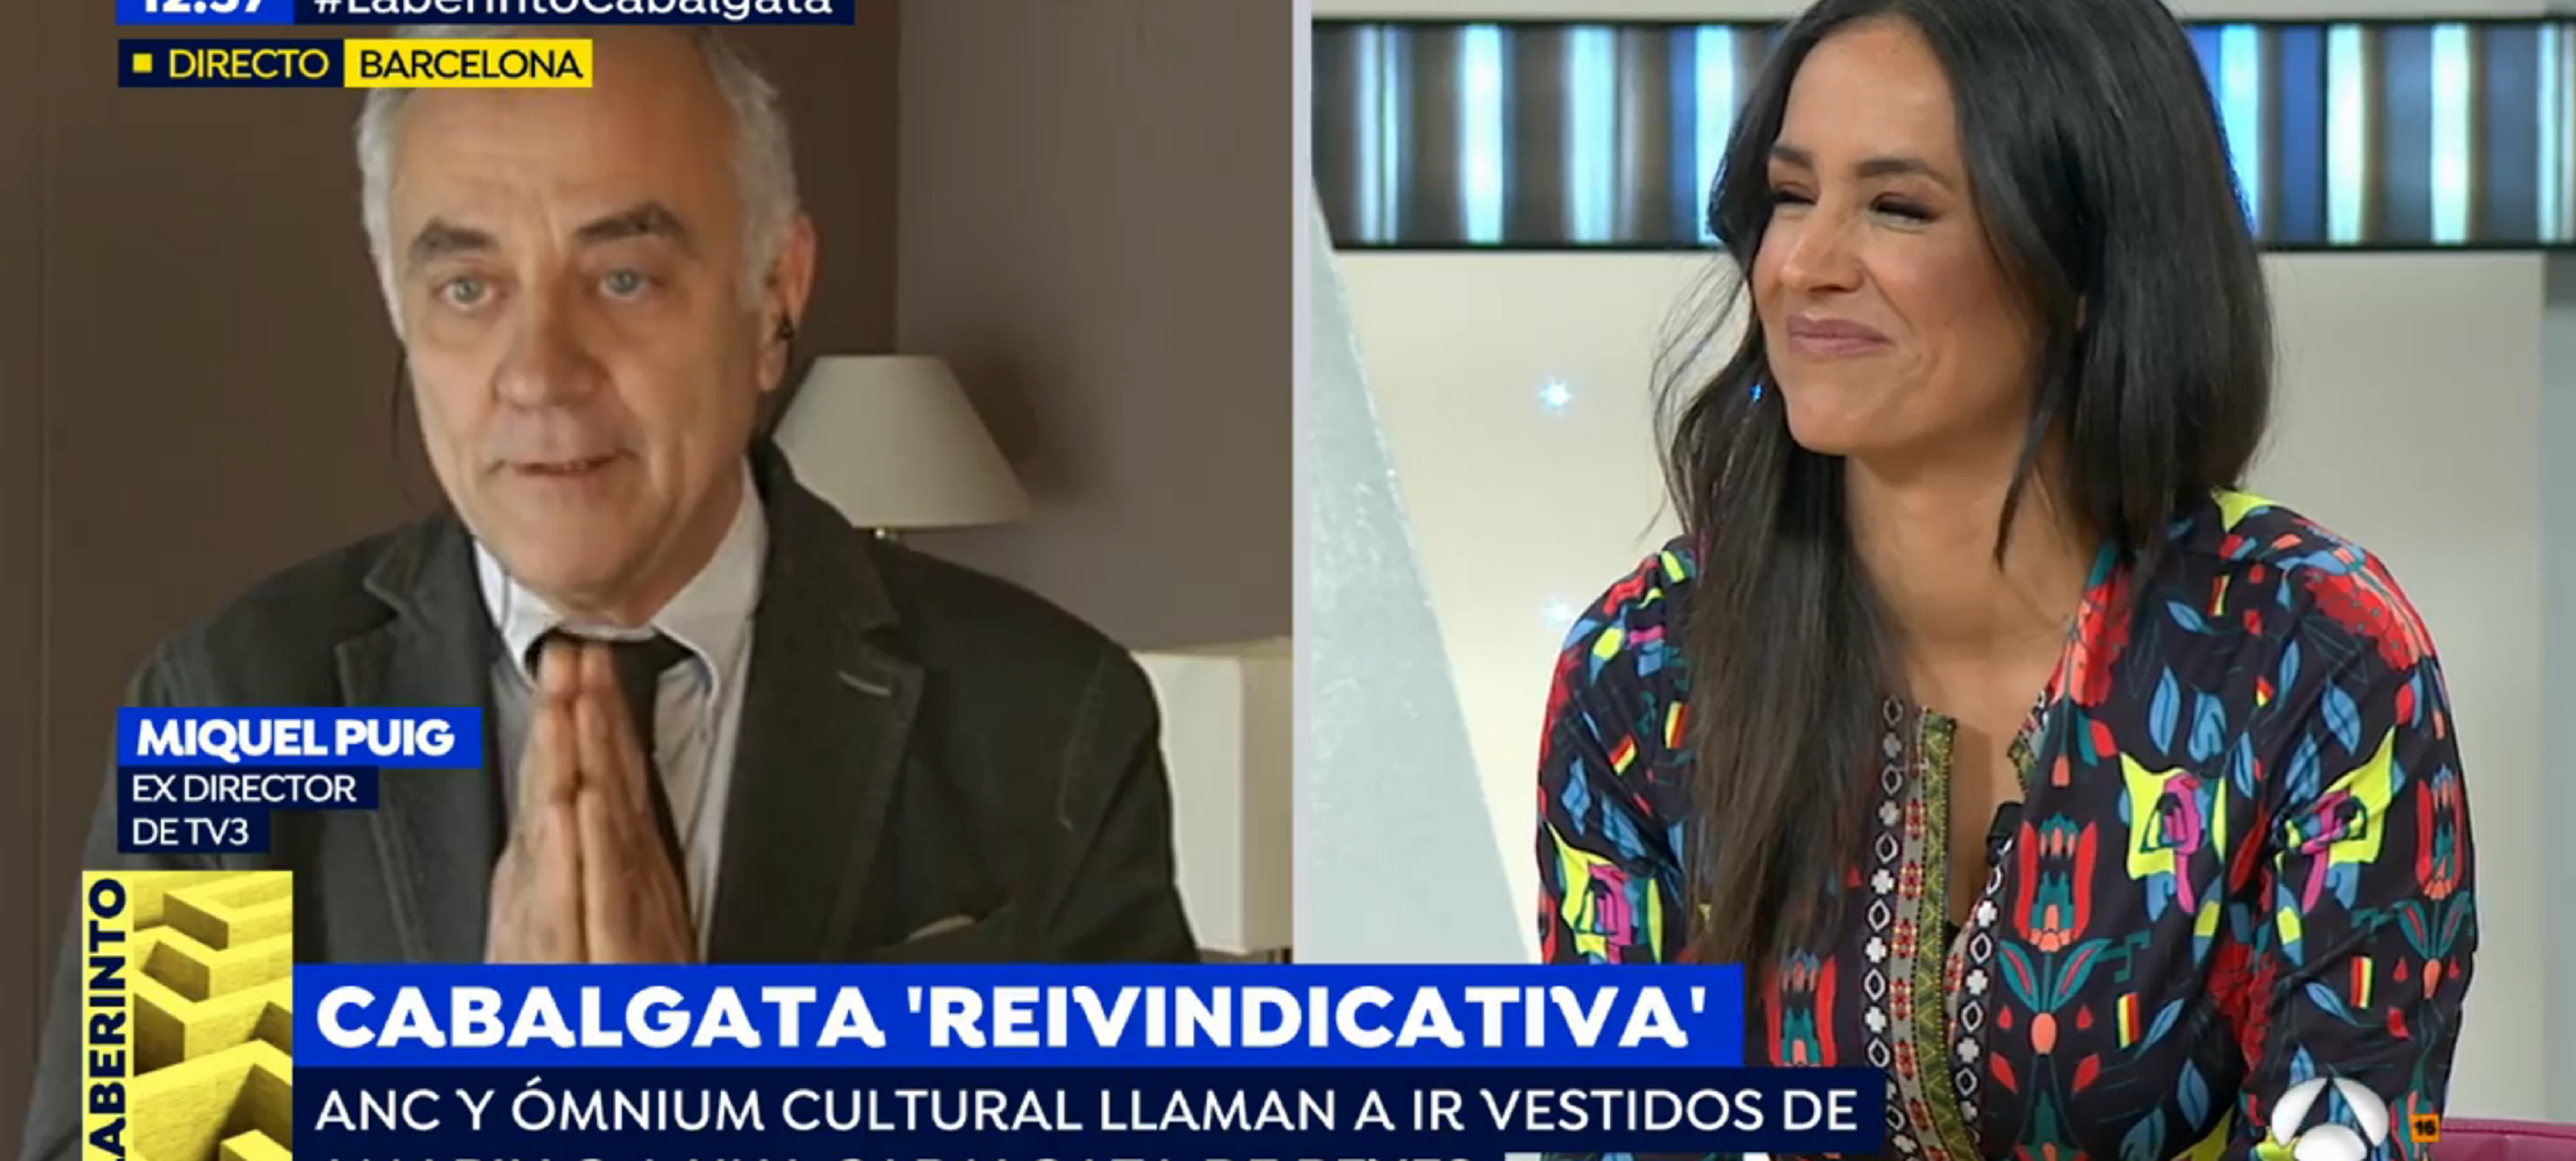 Antena 3 y Ciudadanos atacan a TV3 por la Cabalgata de Reyes independentista